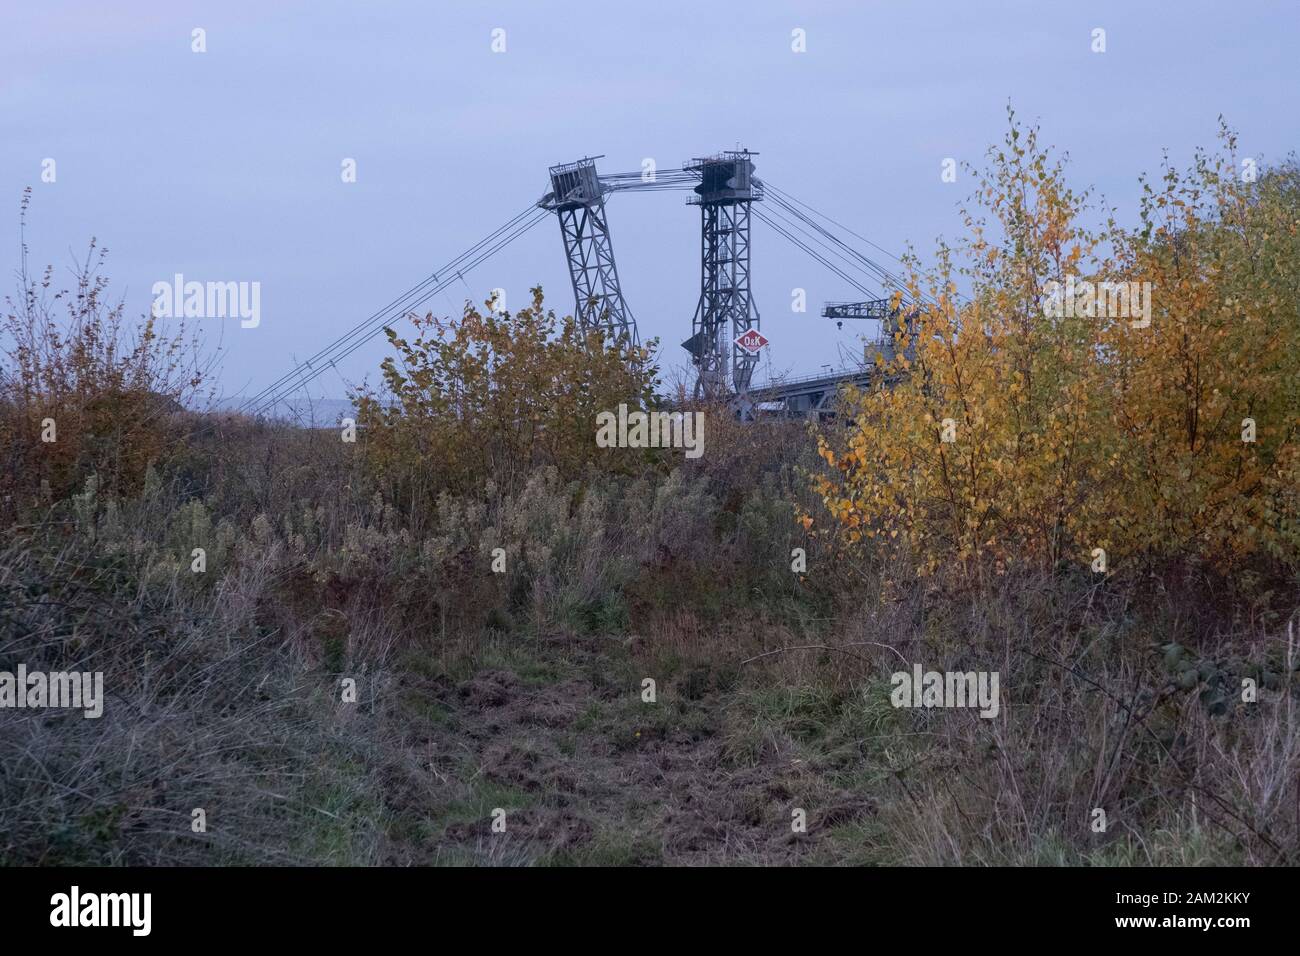 View of top of bucket wheel excavator in coal mine, Morschenich, Germany Stock Photo